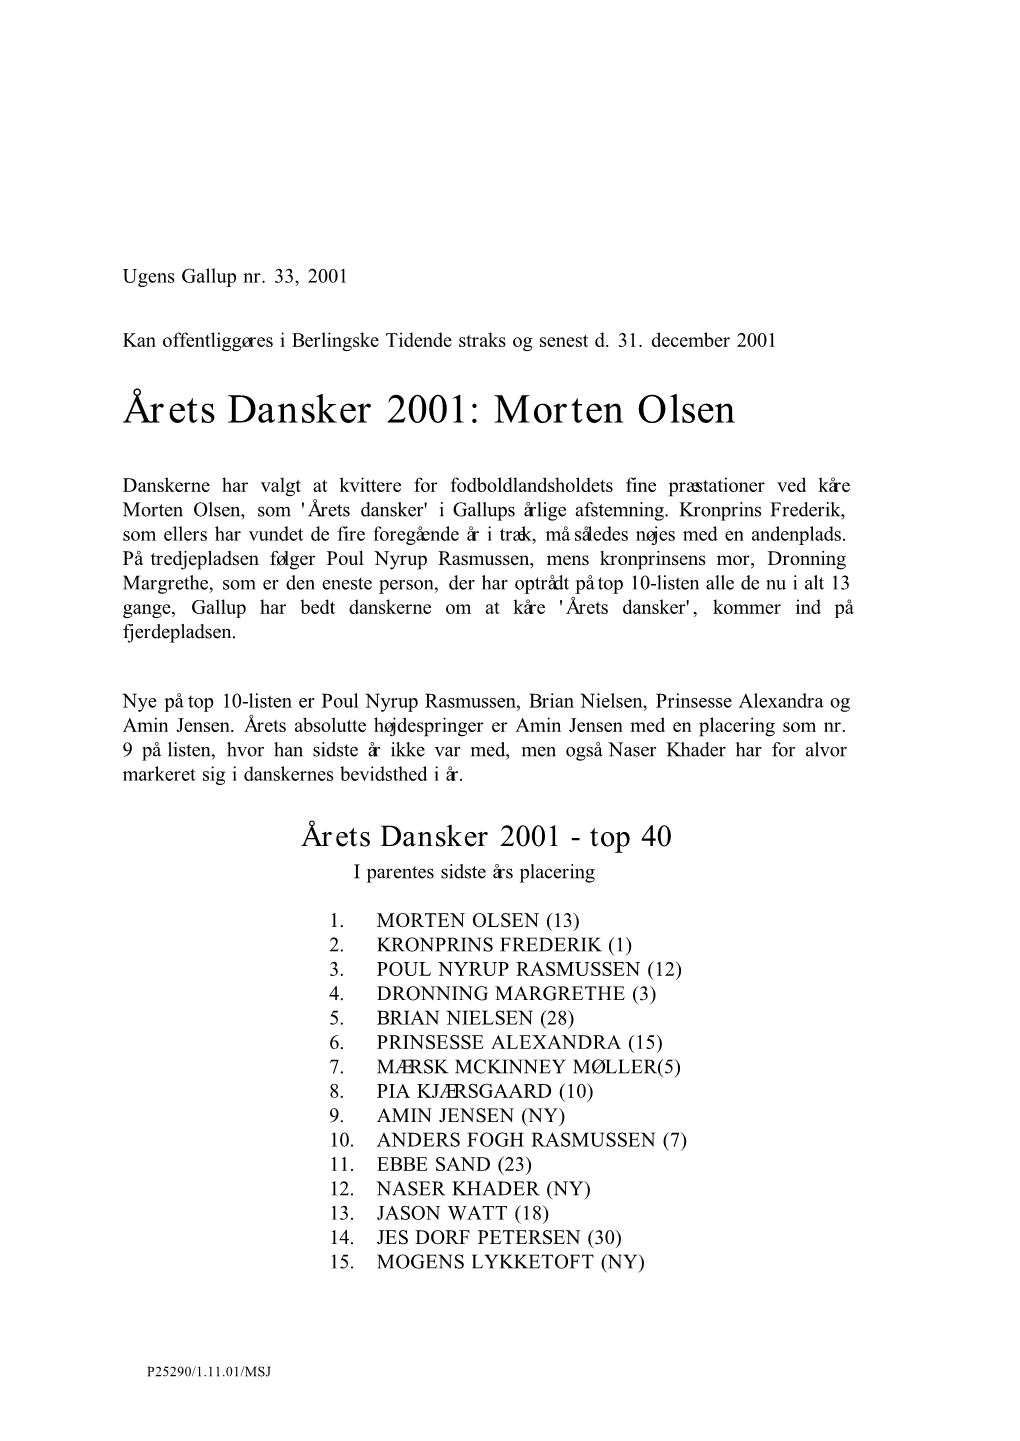 Årets Dansker 2001: Morten Olsen